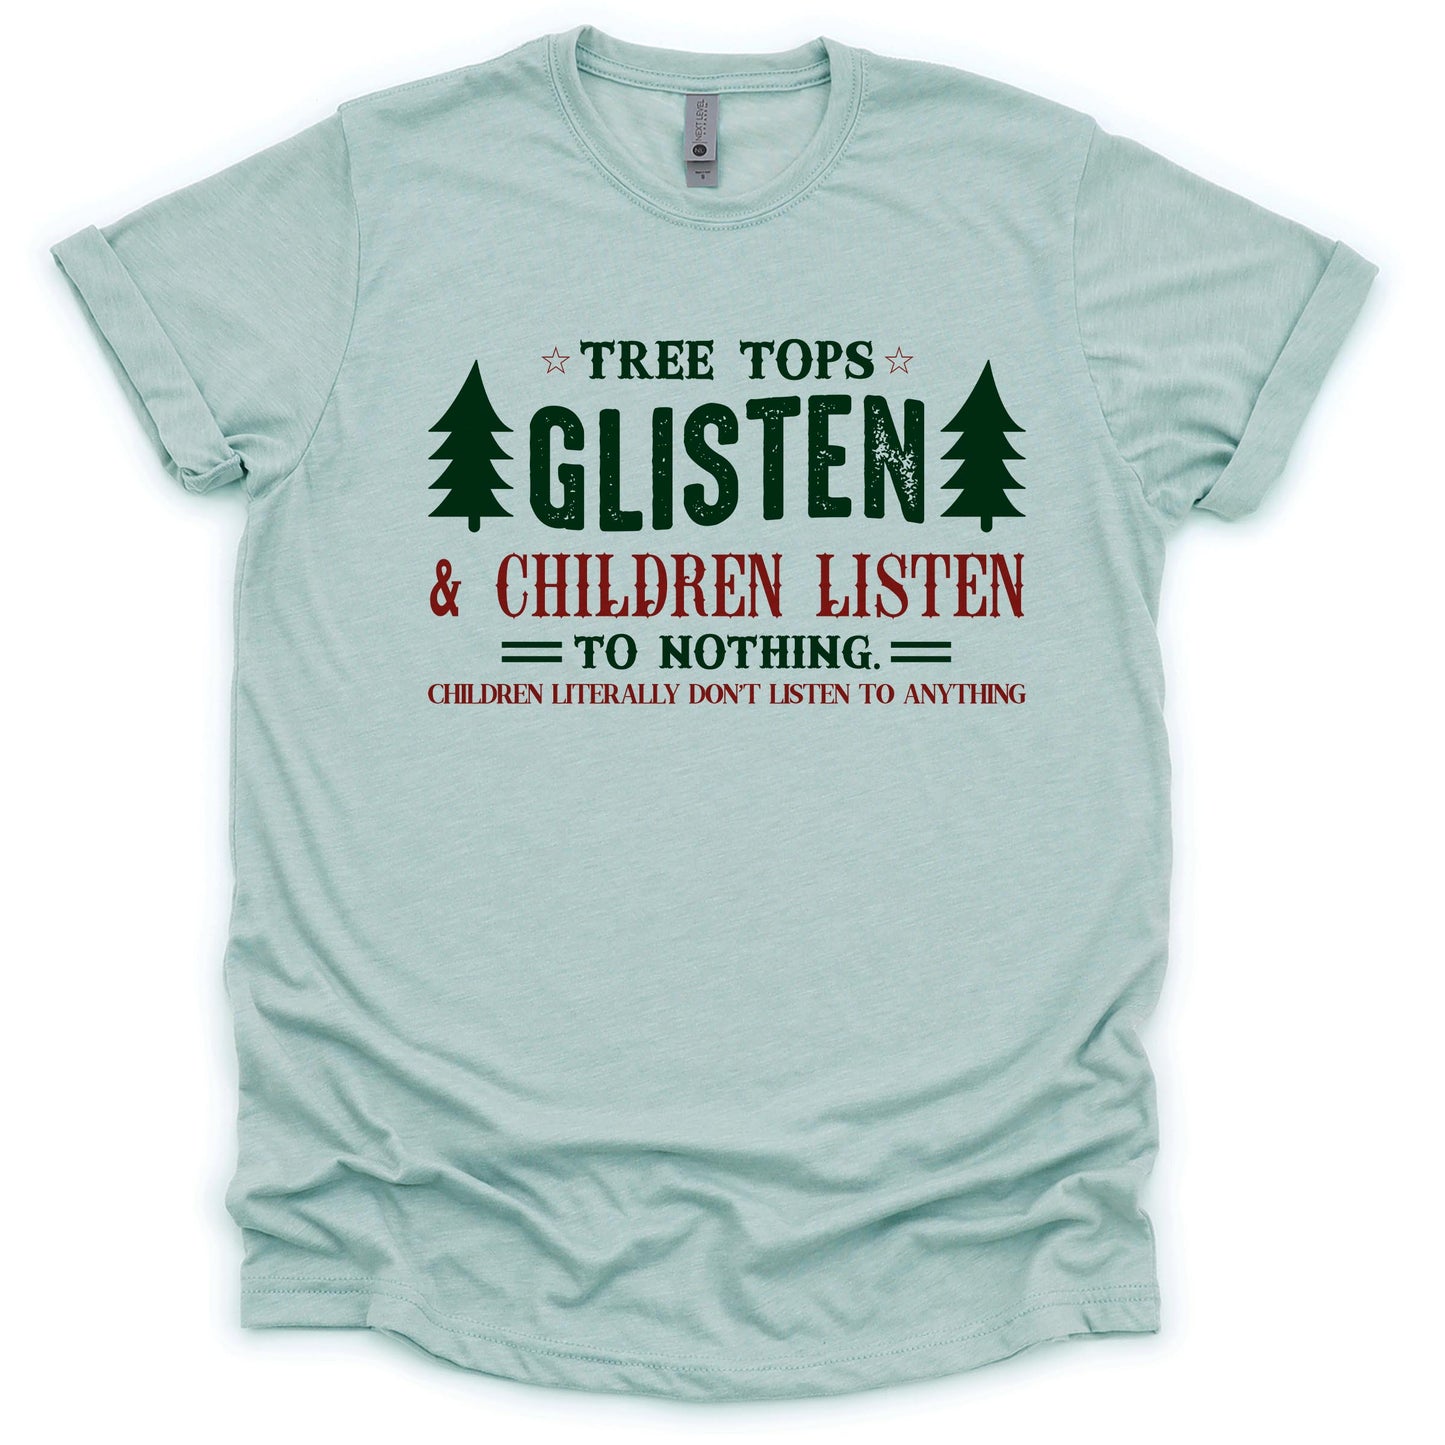 The Tree Tops Glisten